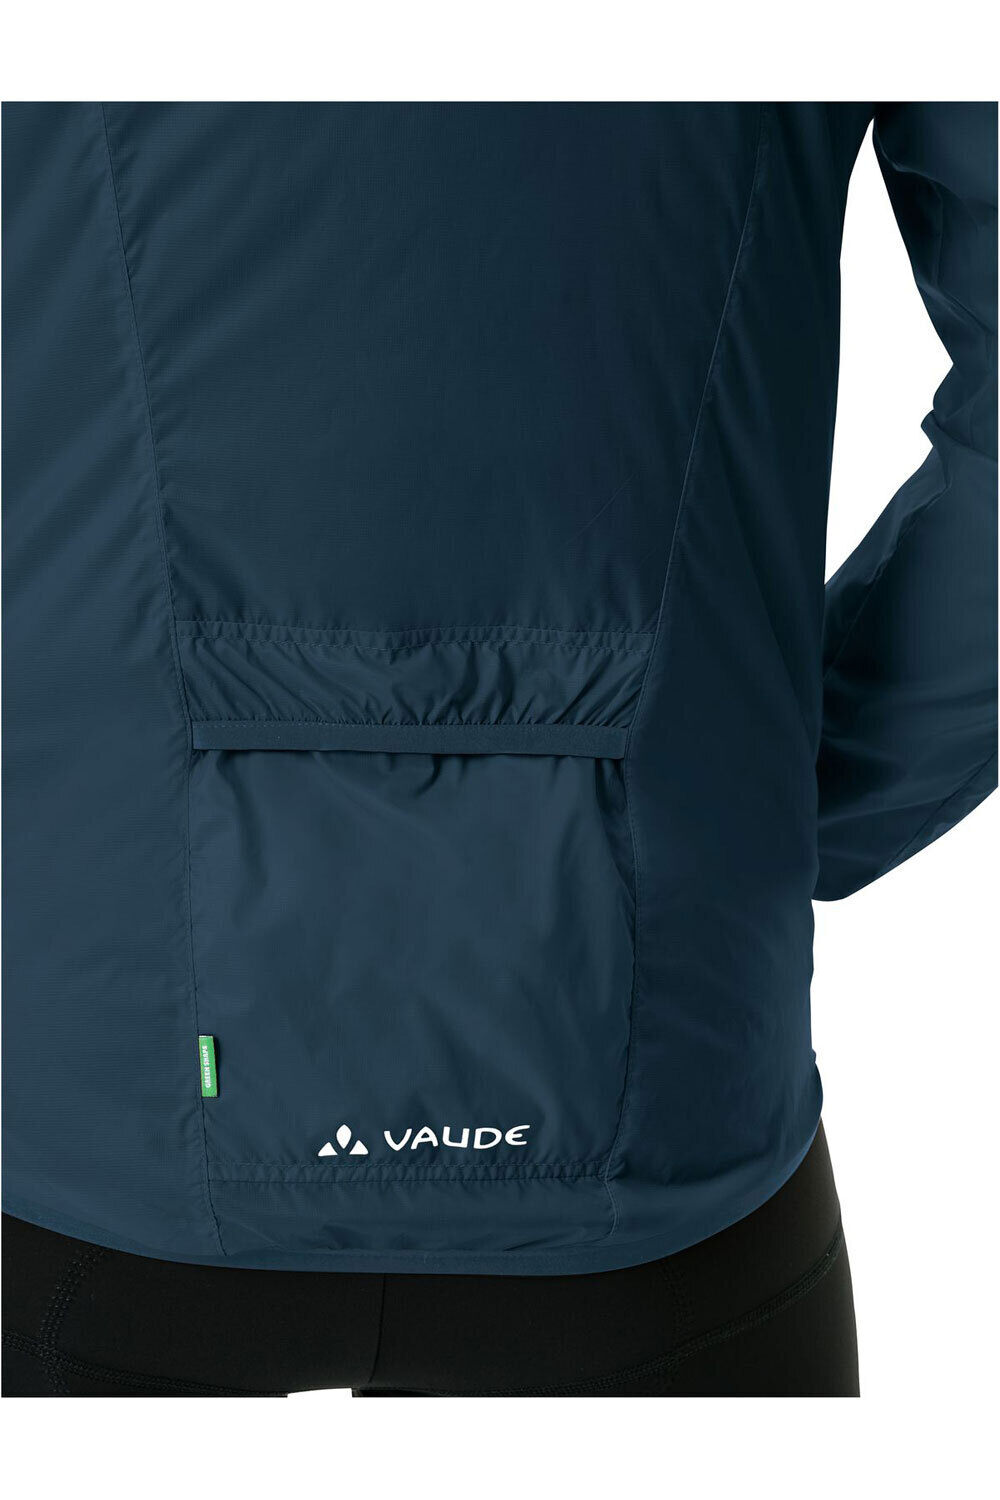 Vaude chaqueta impermeable ciclismo hombre Men's Air Jacket III 03